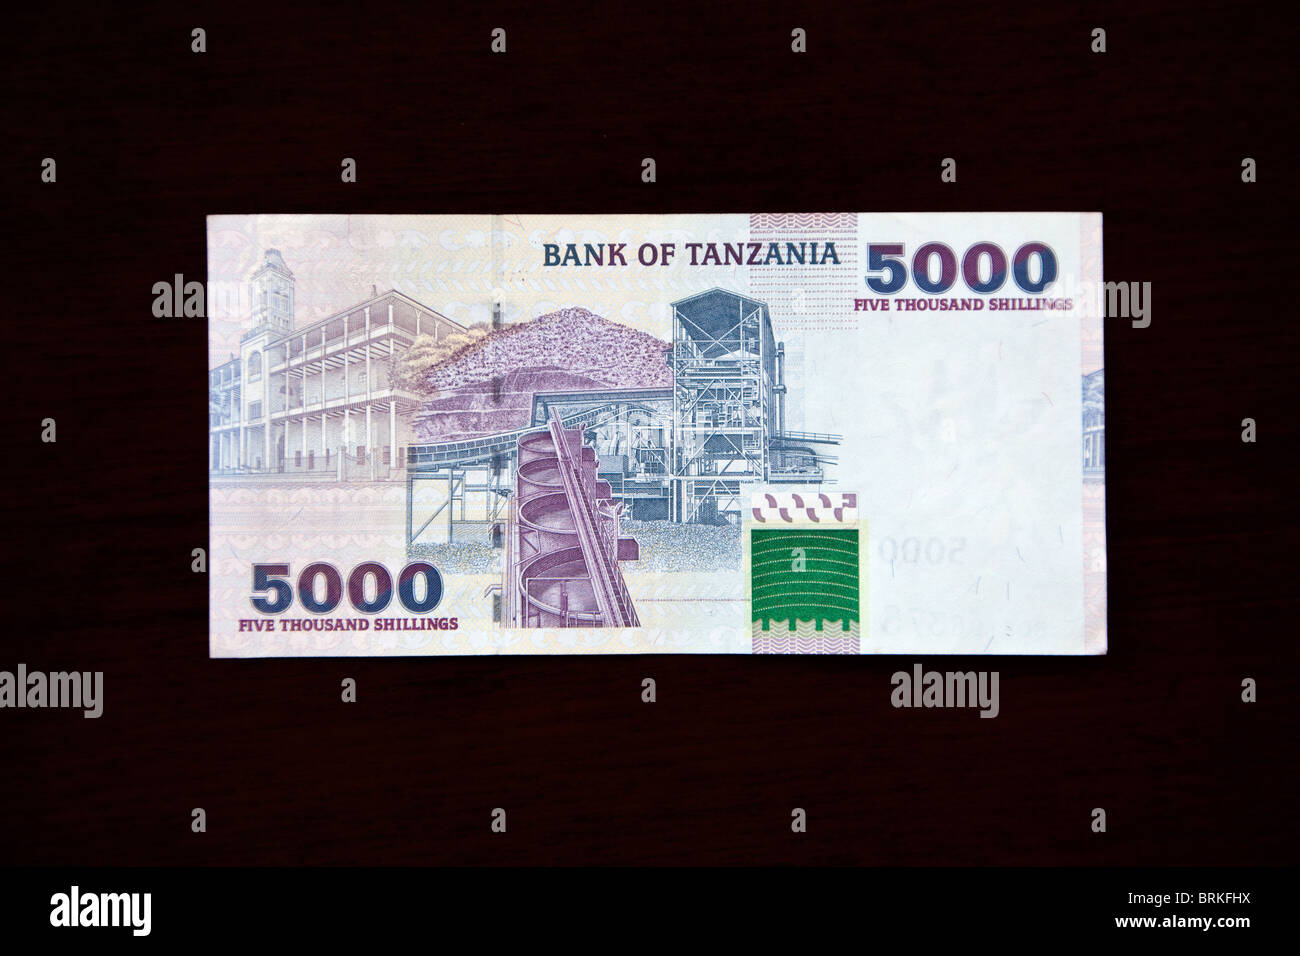 Zanzíbar, Tanzania. Billetes de Tanzania. 5000 chelines, atrás. Beit al-Ajaib, House of Wonders, Stone Town, en la parte izquierda, Geita mina de oro en Derecho, 2003. Foto de stock